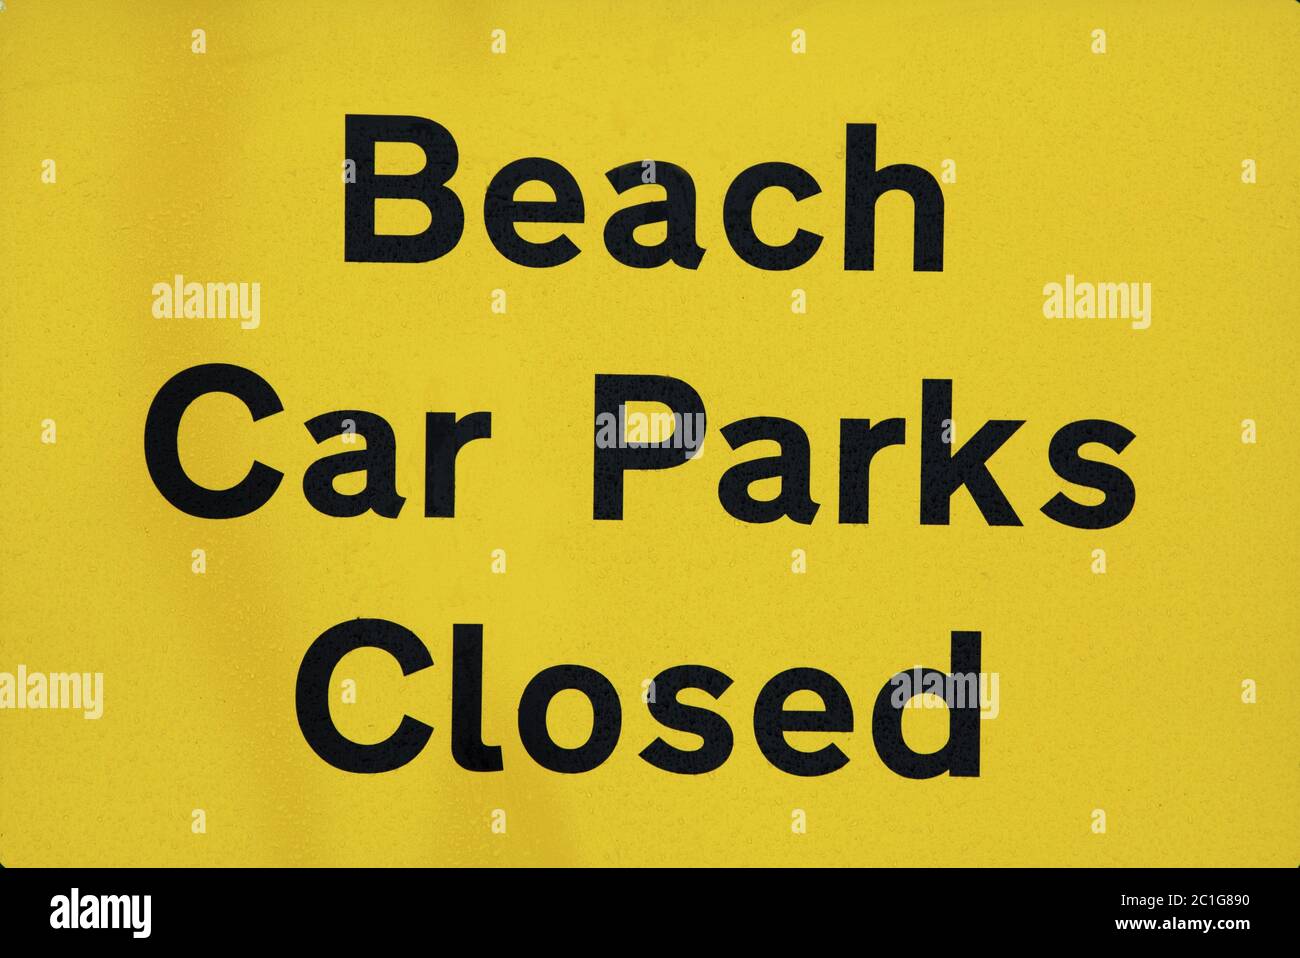 Covid-19, Parques de coches de playa cerrado, señal, aviso, Holme al lado del mar, Norfolk, Inglaterra Foto de stock